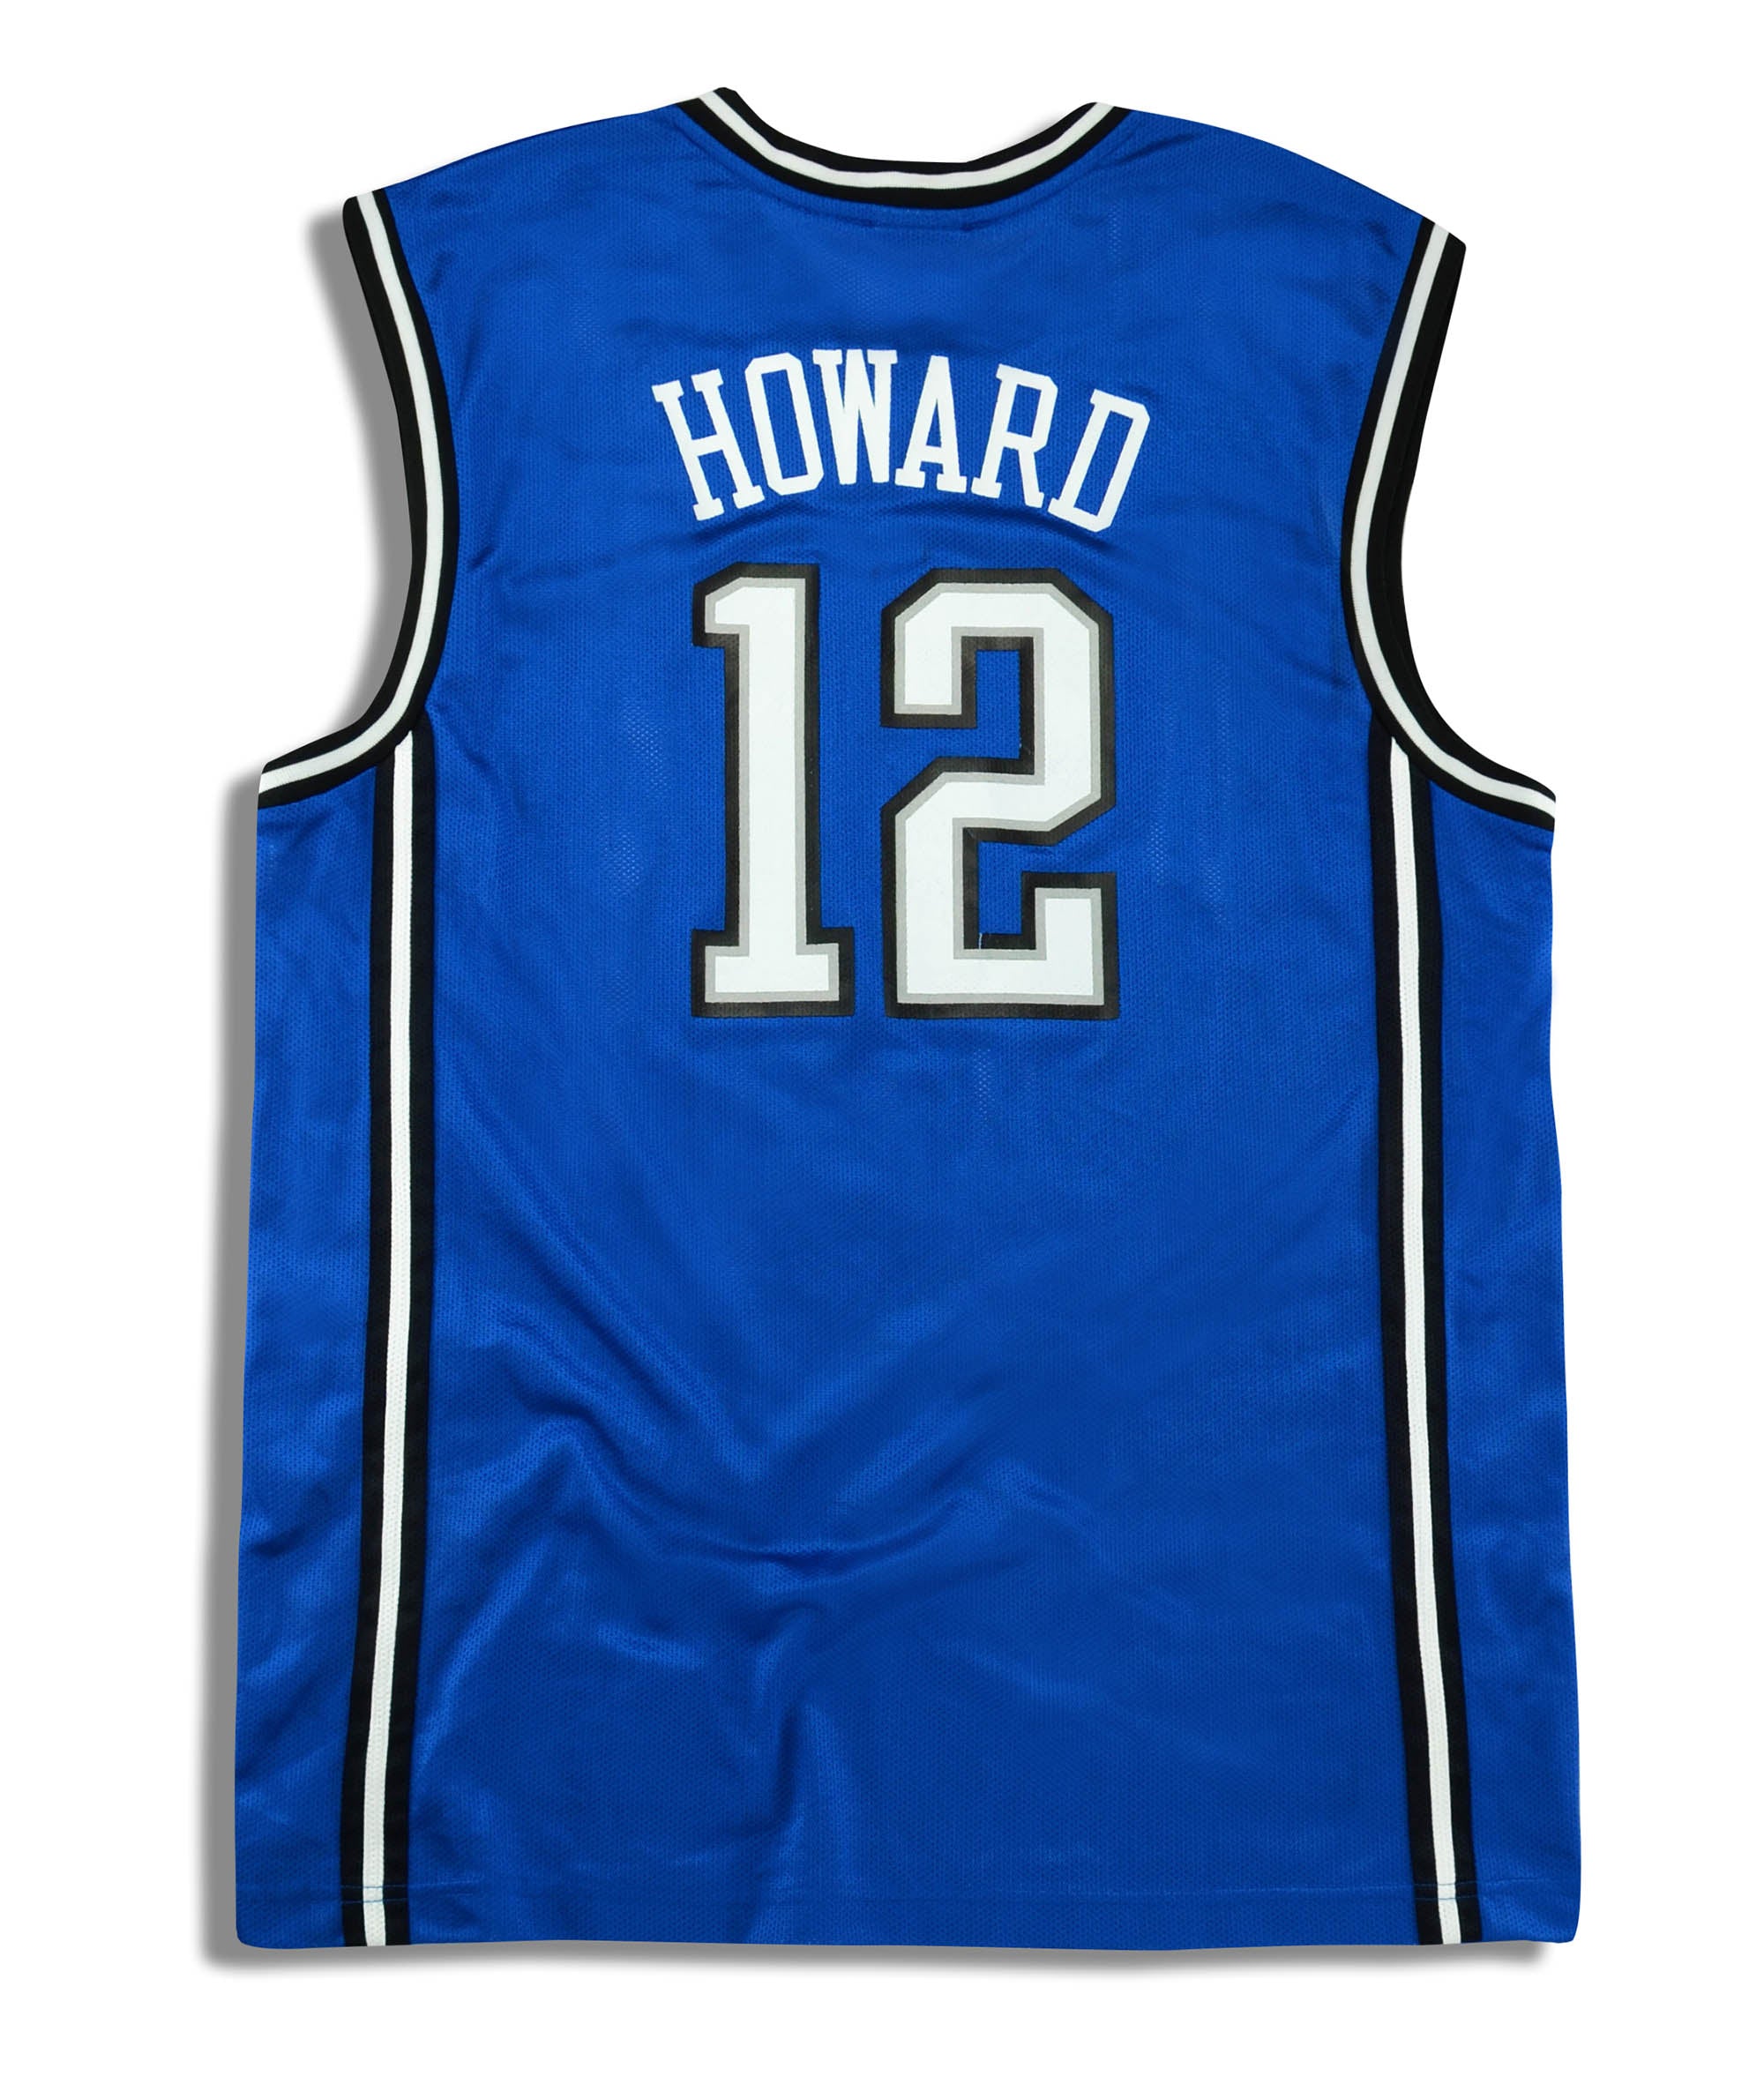 howard orlando magic jersey